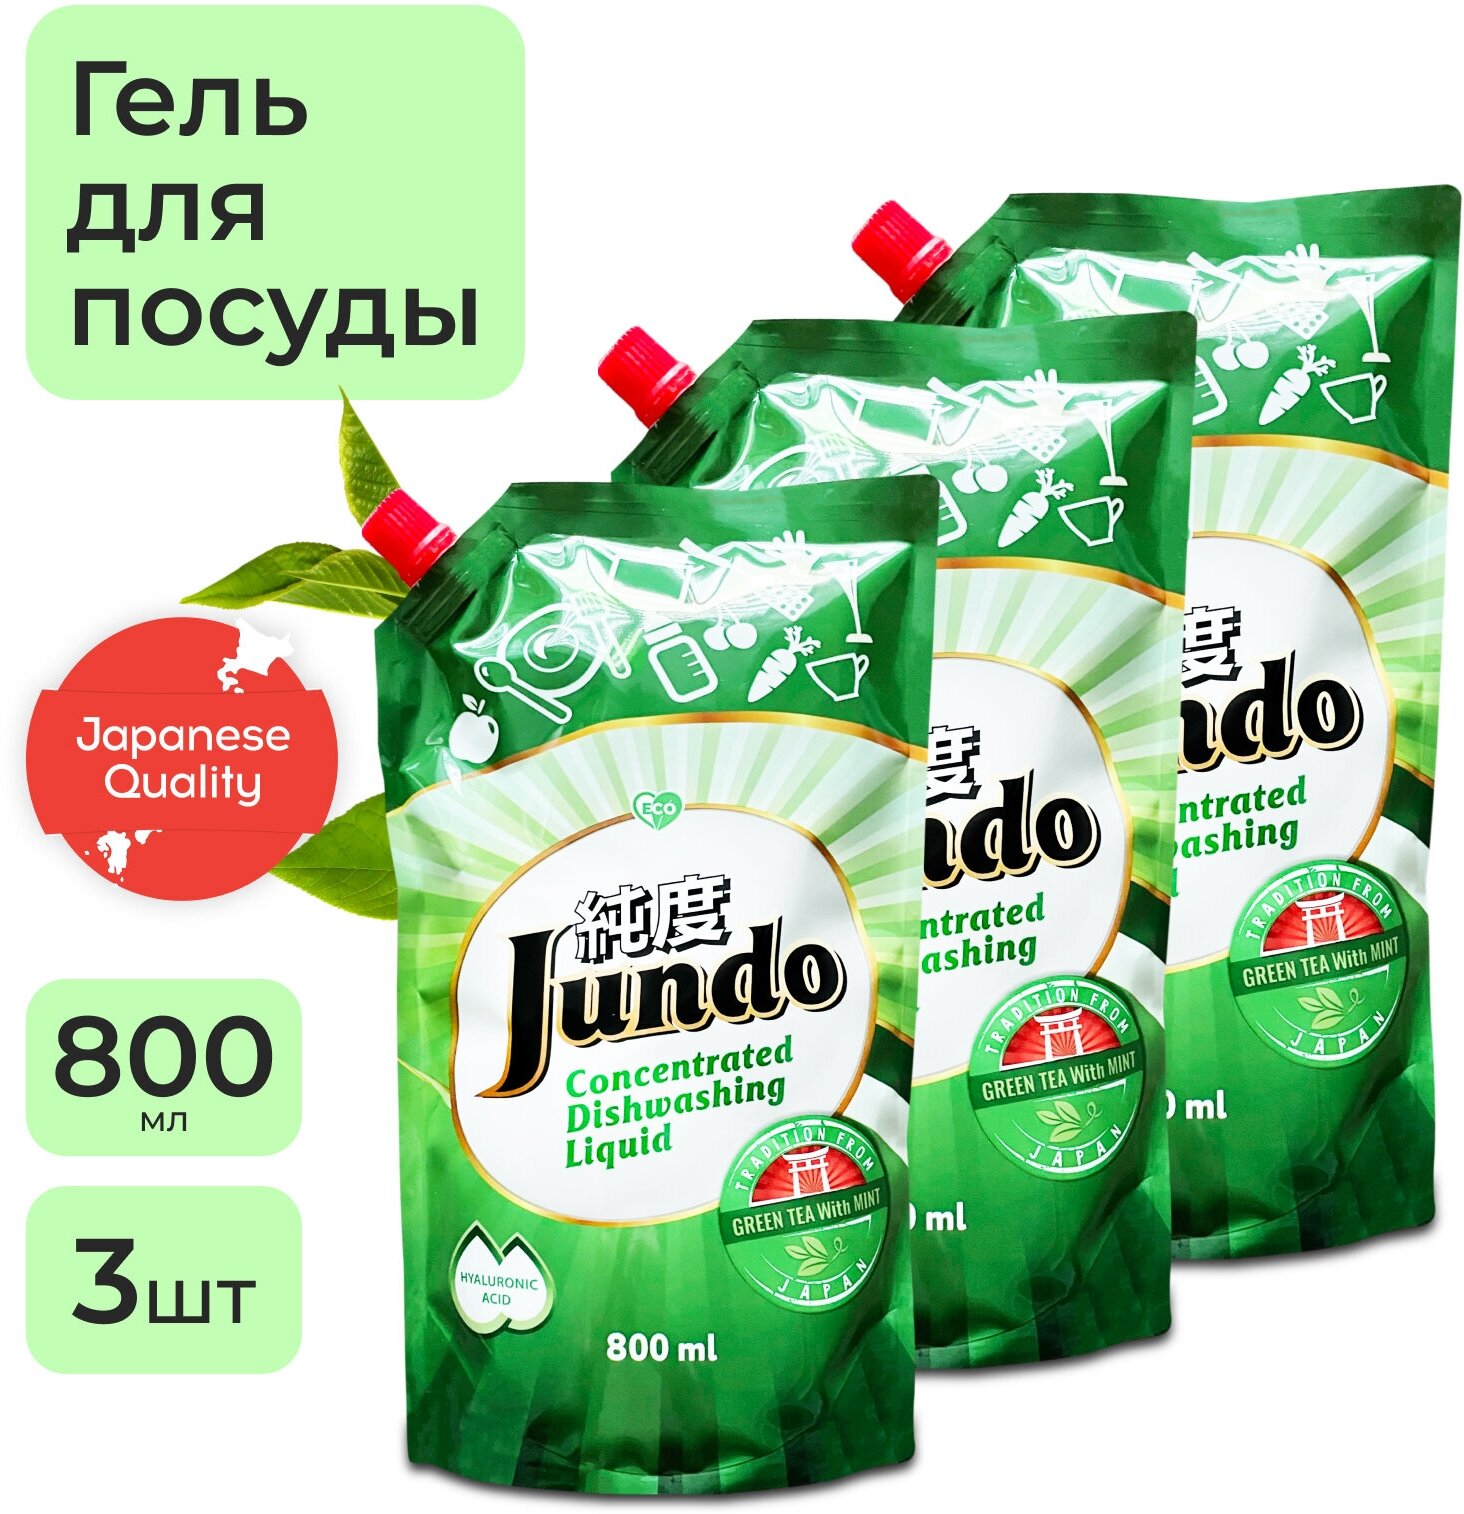 3 шт - Jundo Конц-ный ЭКО гель с гиалуроновой кислотой для мытья посуды и детских принадлежностей«Green tea with Mint»,800мл.